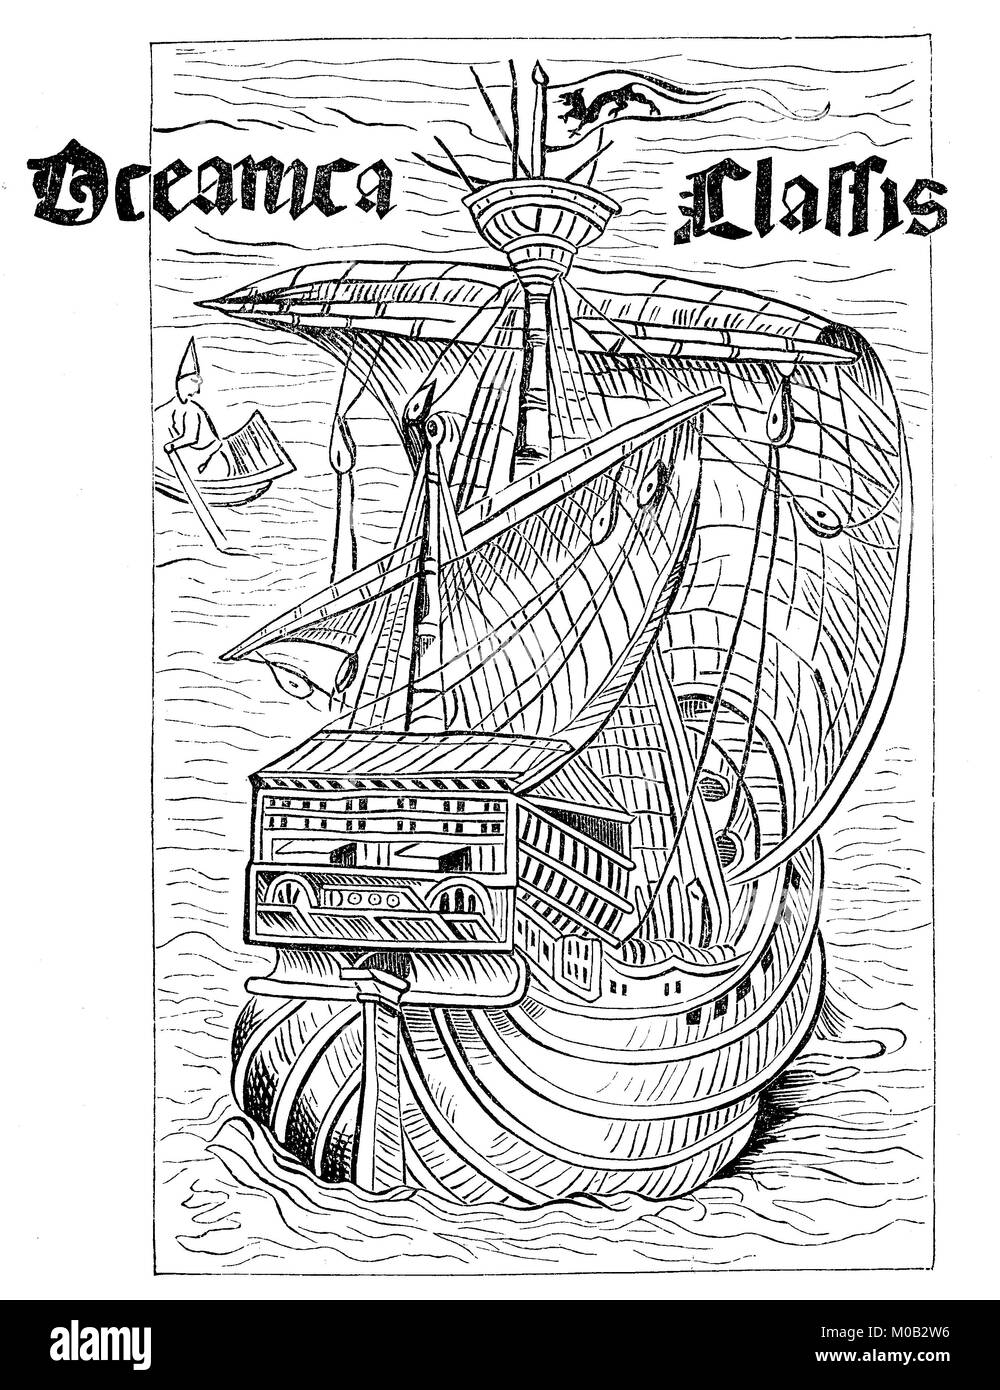 Zeichnung eines spanischen Schiffes aus der Zeit der Entdeckung Amerikas, um 1492, digital verbesserte Reproduktion einer Vorlage drucken von 1880 Stockfoto